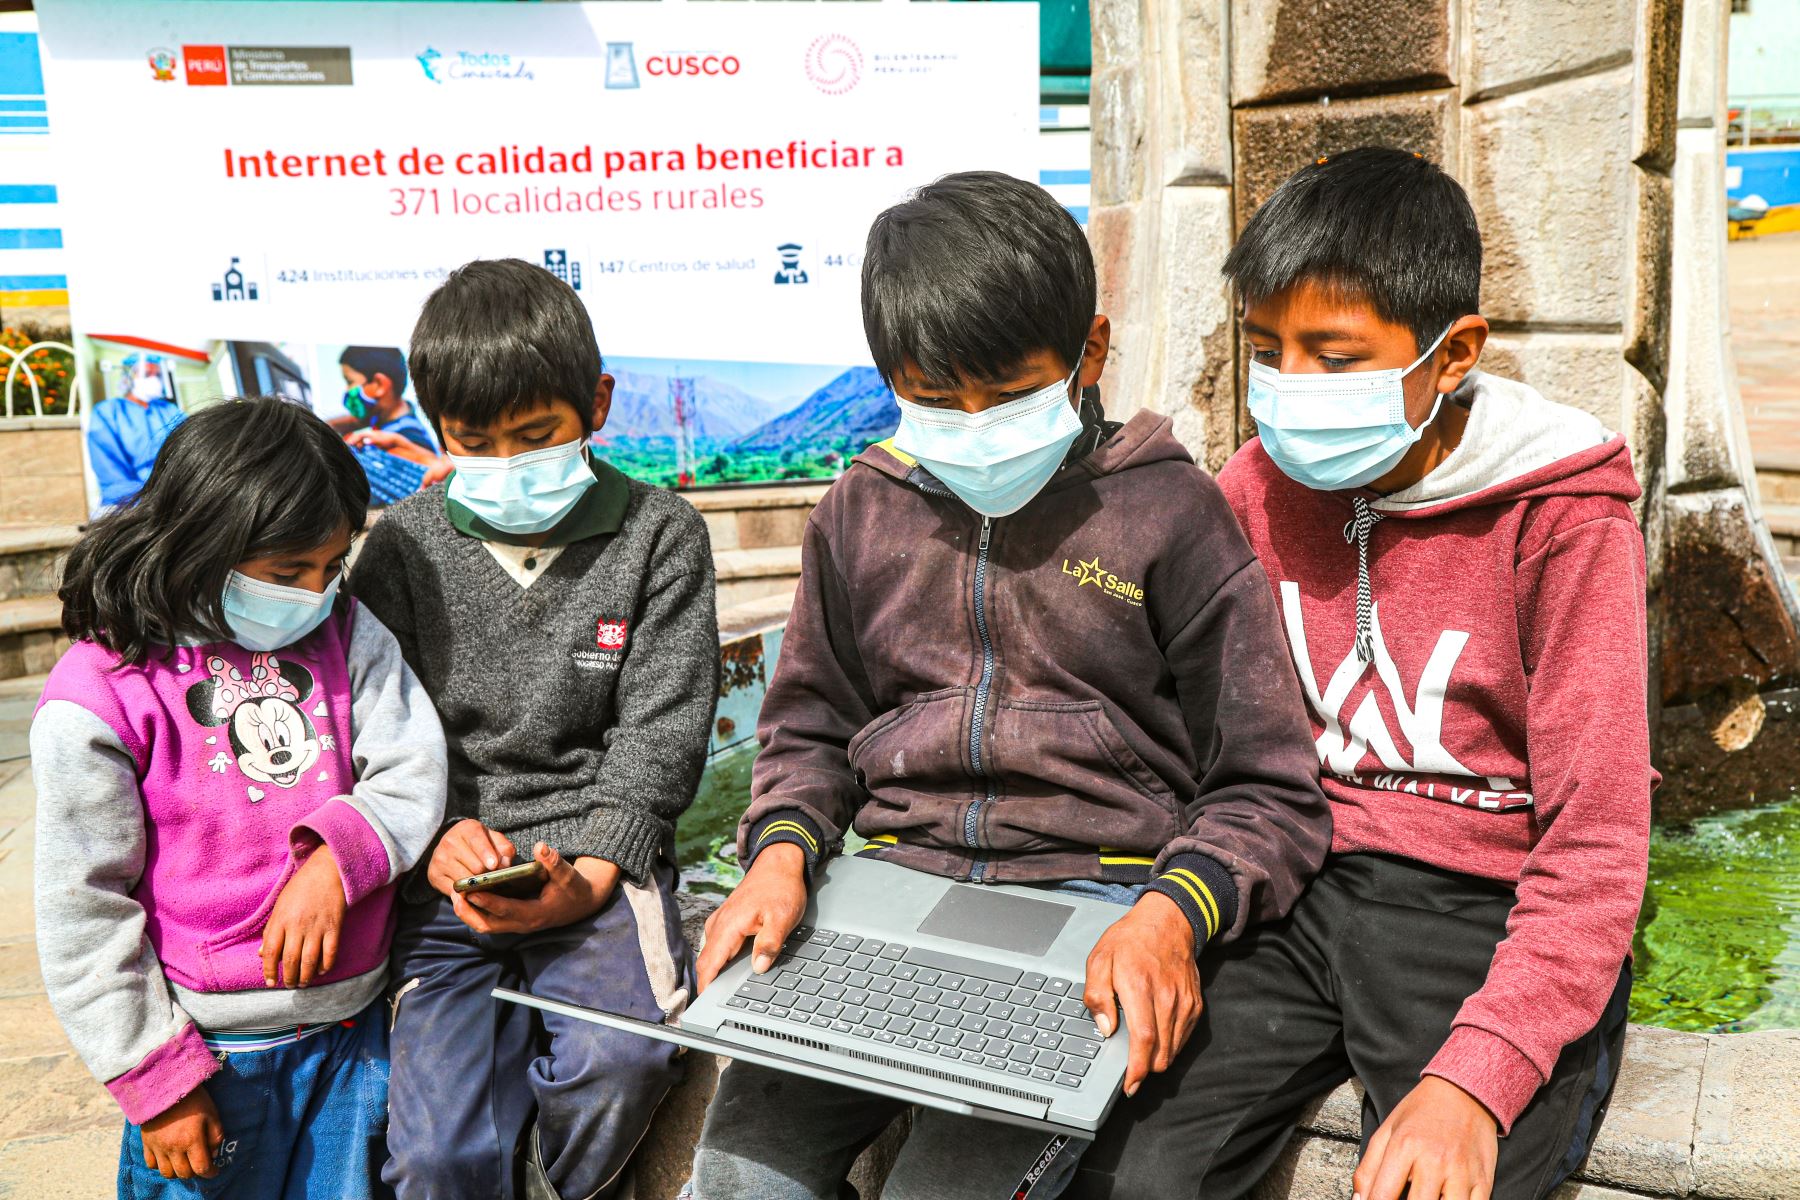 El MTC capacita en habilidades digitales a más de 25,000 ciudadanos de 22 localidades rurales de Cusco. Foto: ANDINA/difusión.